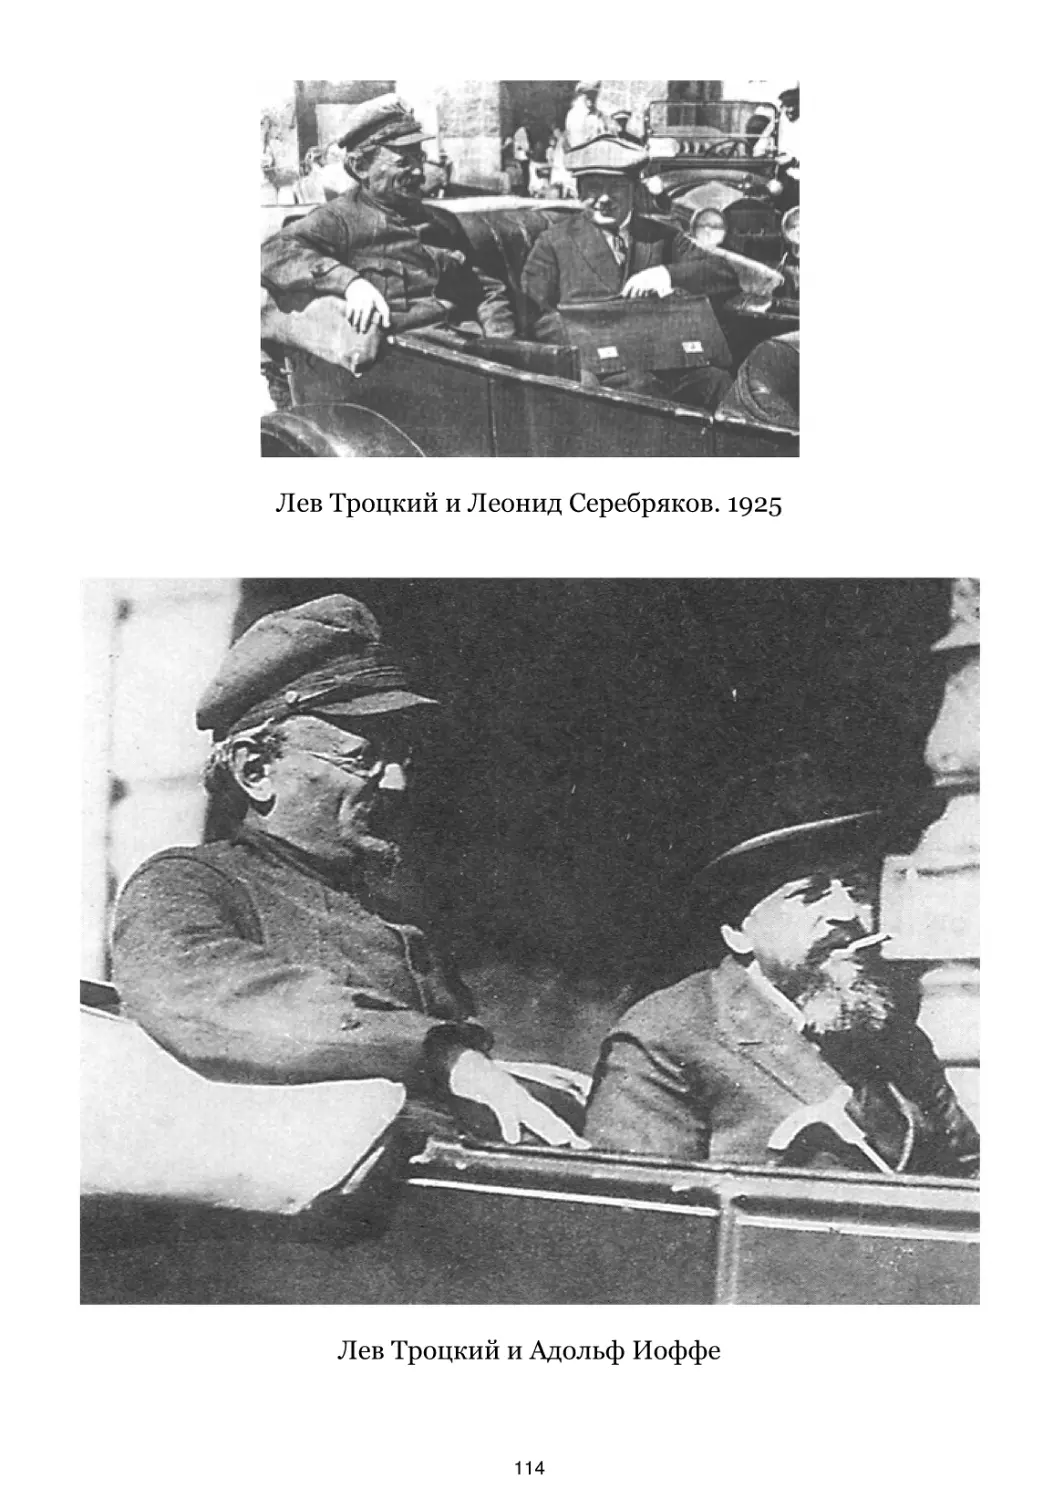 Лев Троцкий и Леонид Серебряков. 1925
Лев Троцкий и Адольф Иоффе